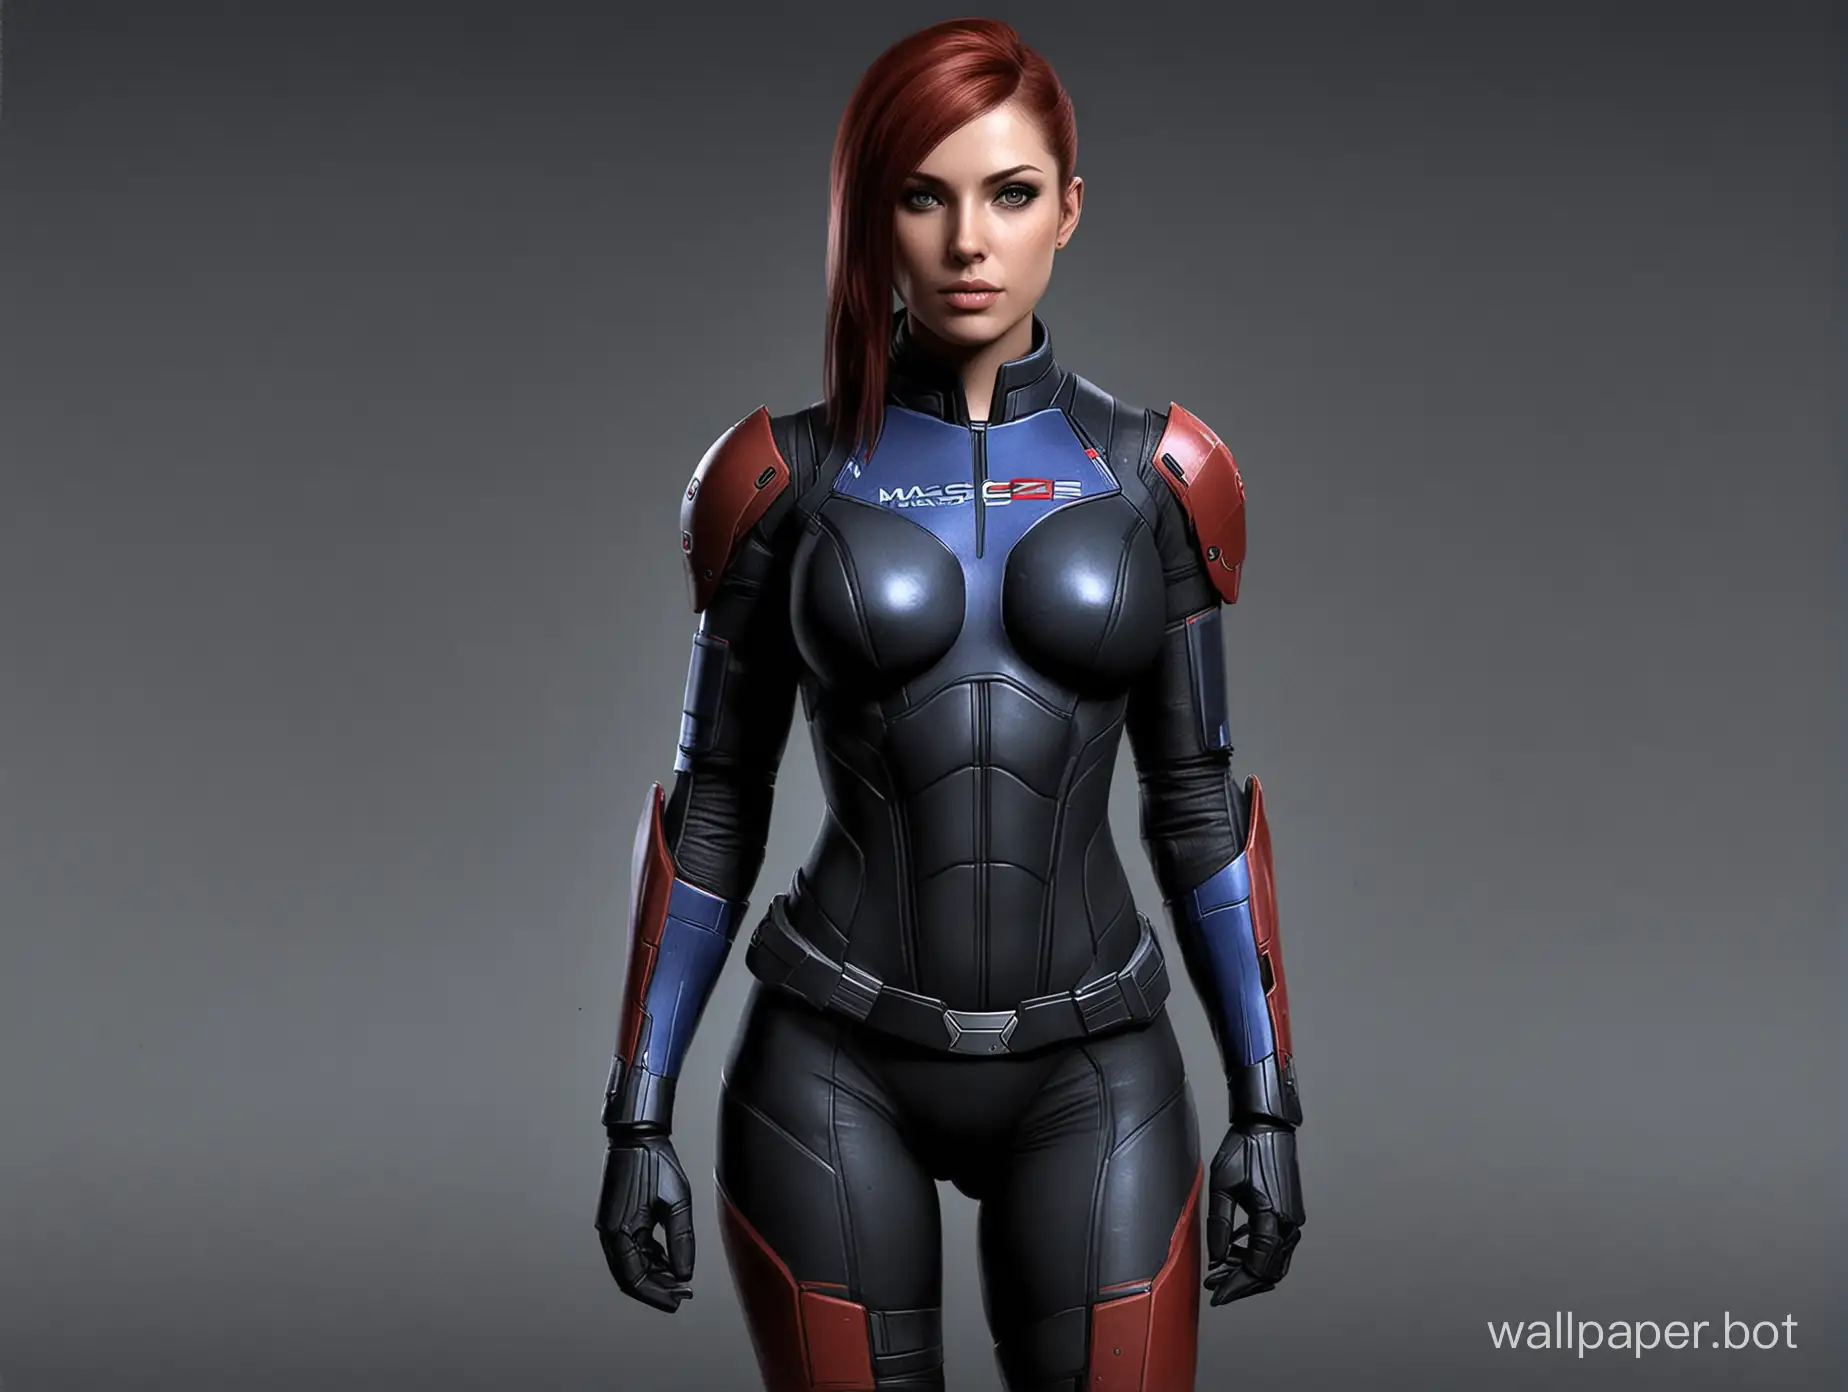 Futuristic-Cyberpunk-Girl-in-the-Universe-of-Mass-Effect